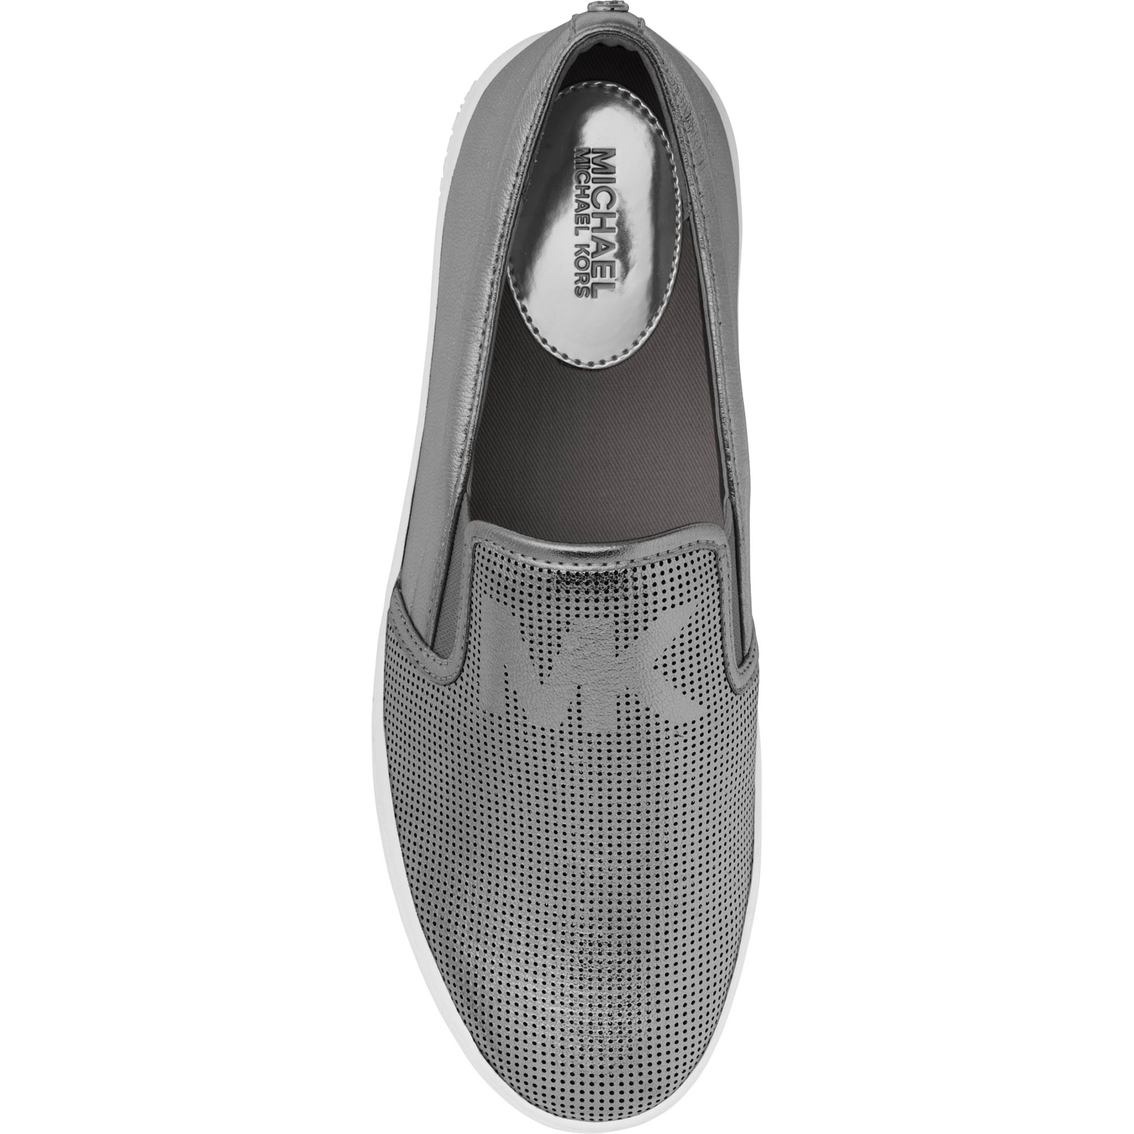 Michael Kors Keaton Slip on Sneakers - Image 3 of 3